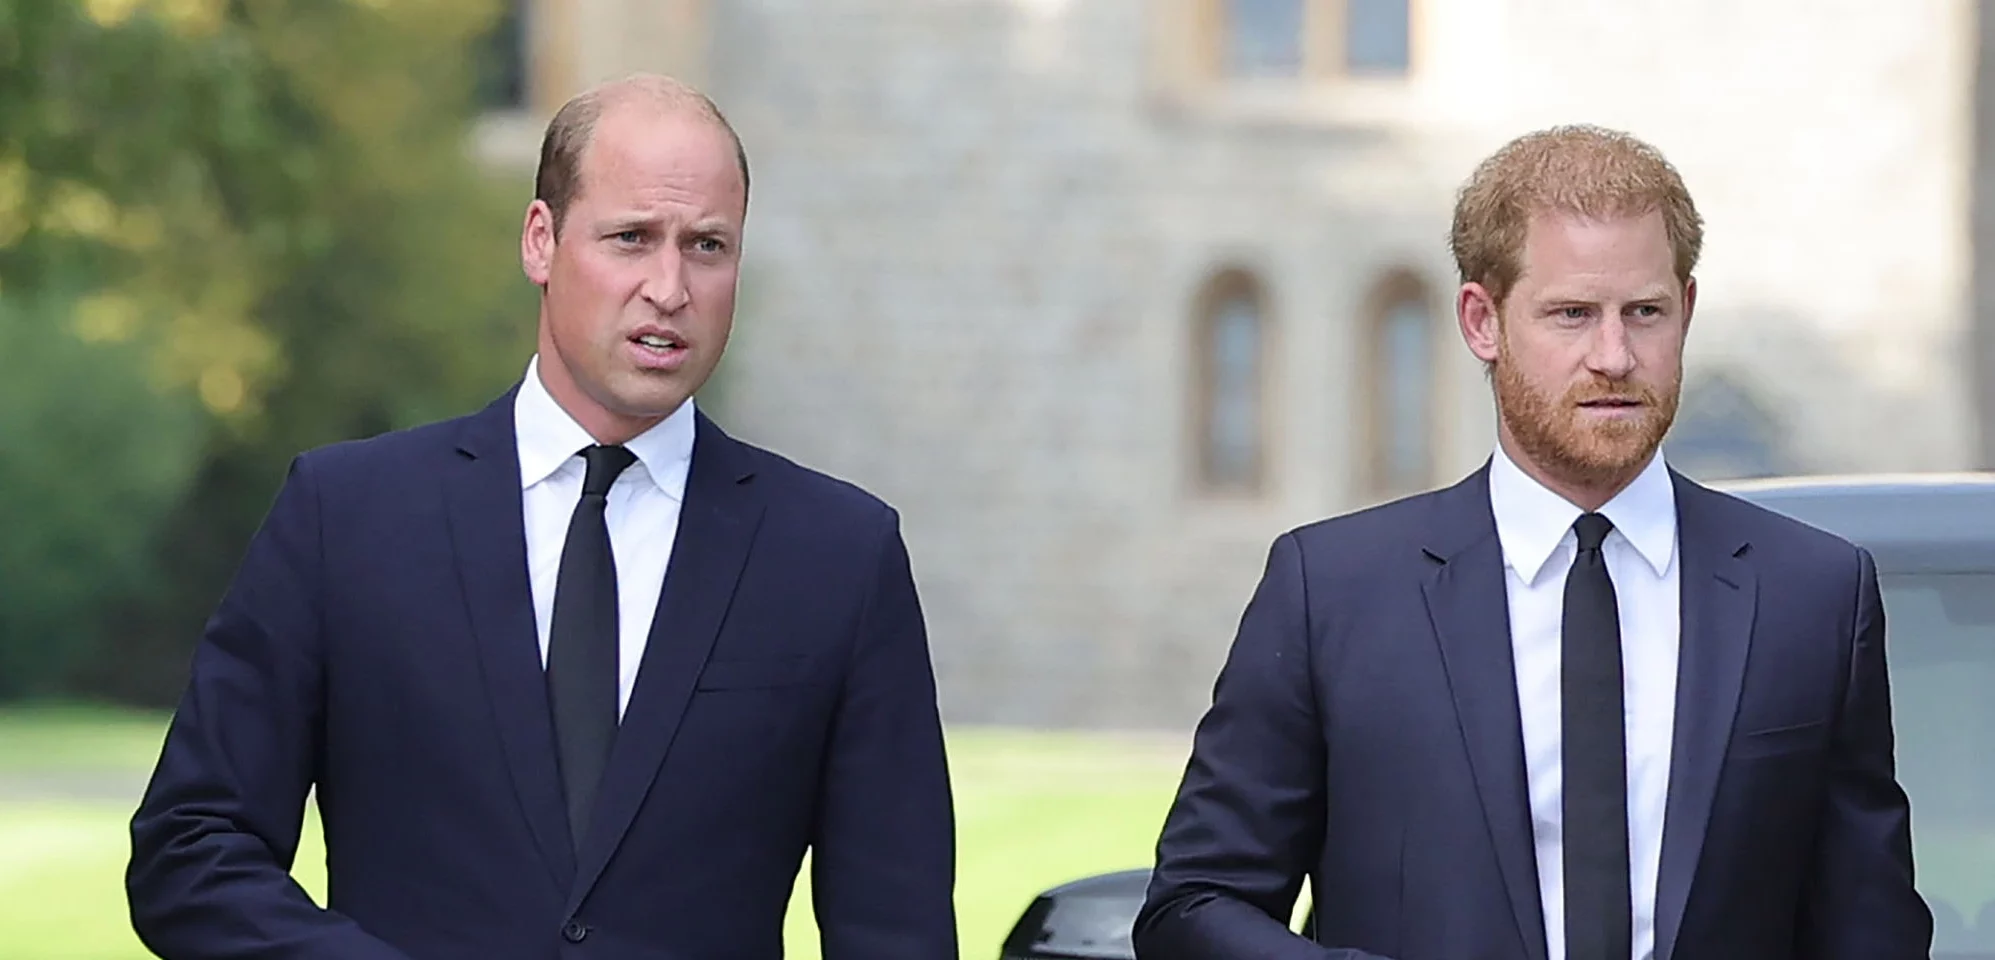 Le prince Harry accuse le prince William de l’avoir agressé physiquement : "Il me jette au sol"